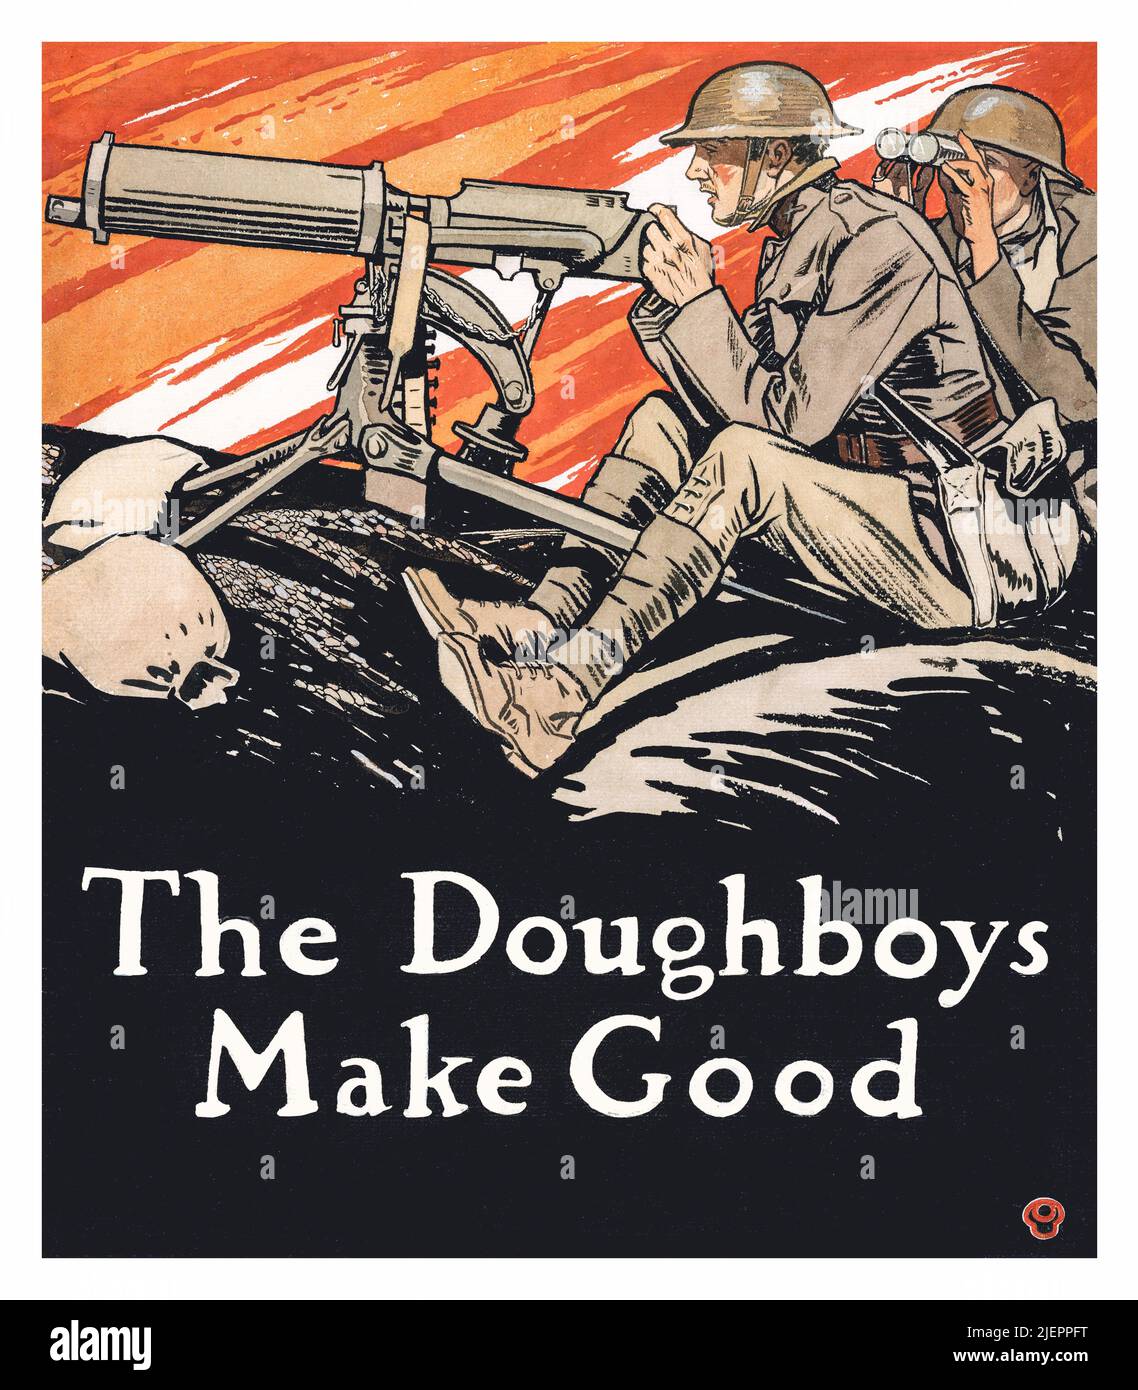 Illustration du début du siècle 20th par Edward Penfield (1866-1925) mettant en vedette les doughboys américains (soldats) à leur poste de mitrailleuse pendant la première Guerre mondiale. Banque D'Images